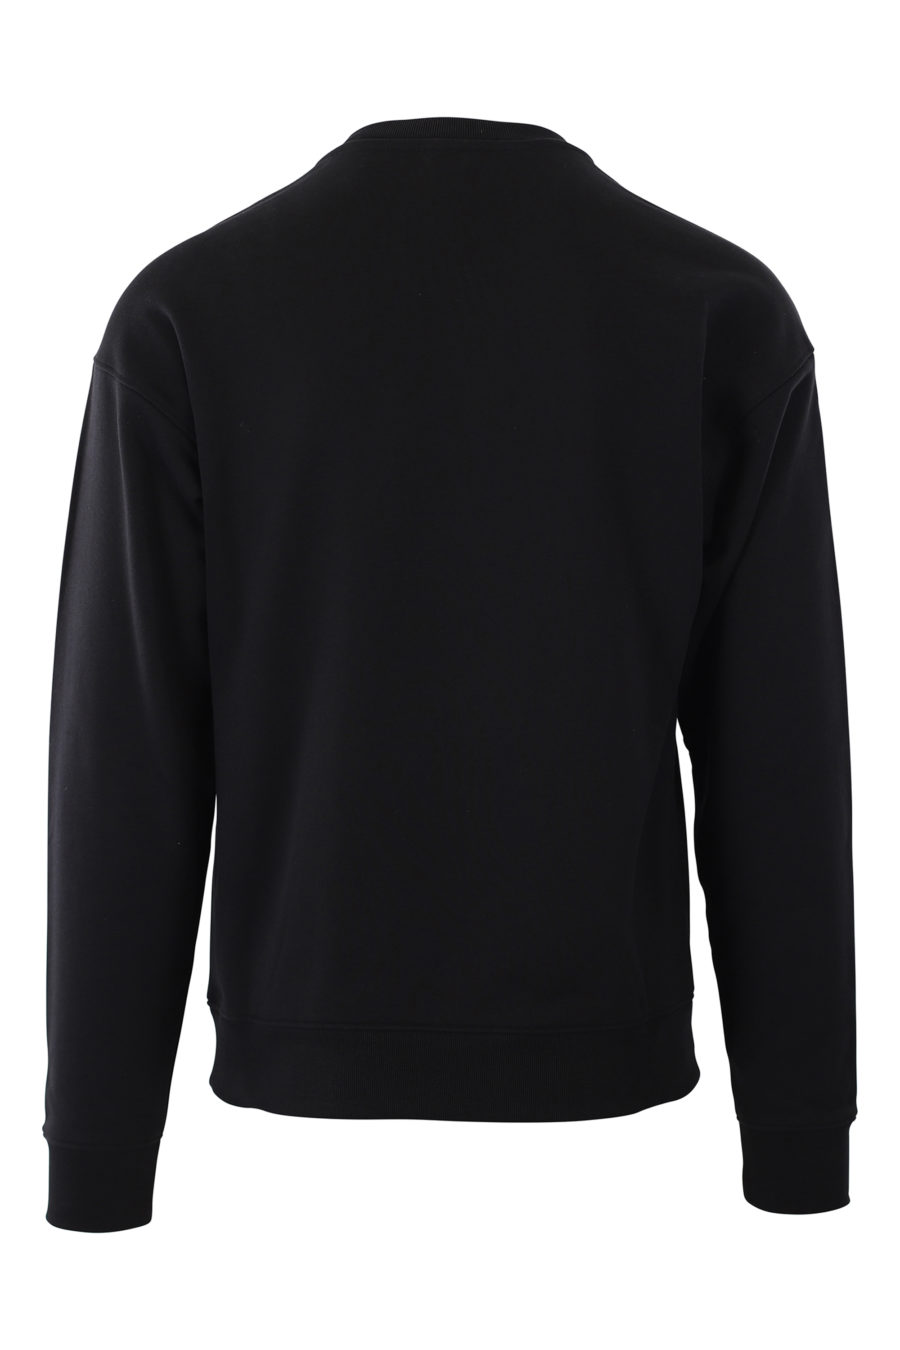 Black sweatshirt with milano "smiley" logo - IMG 2417